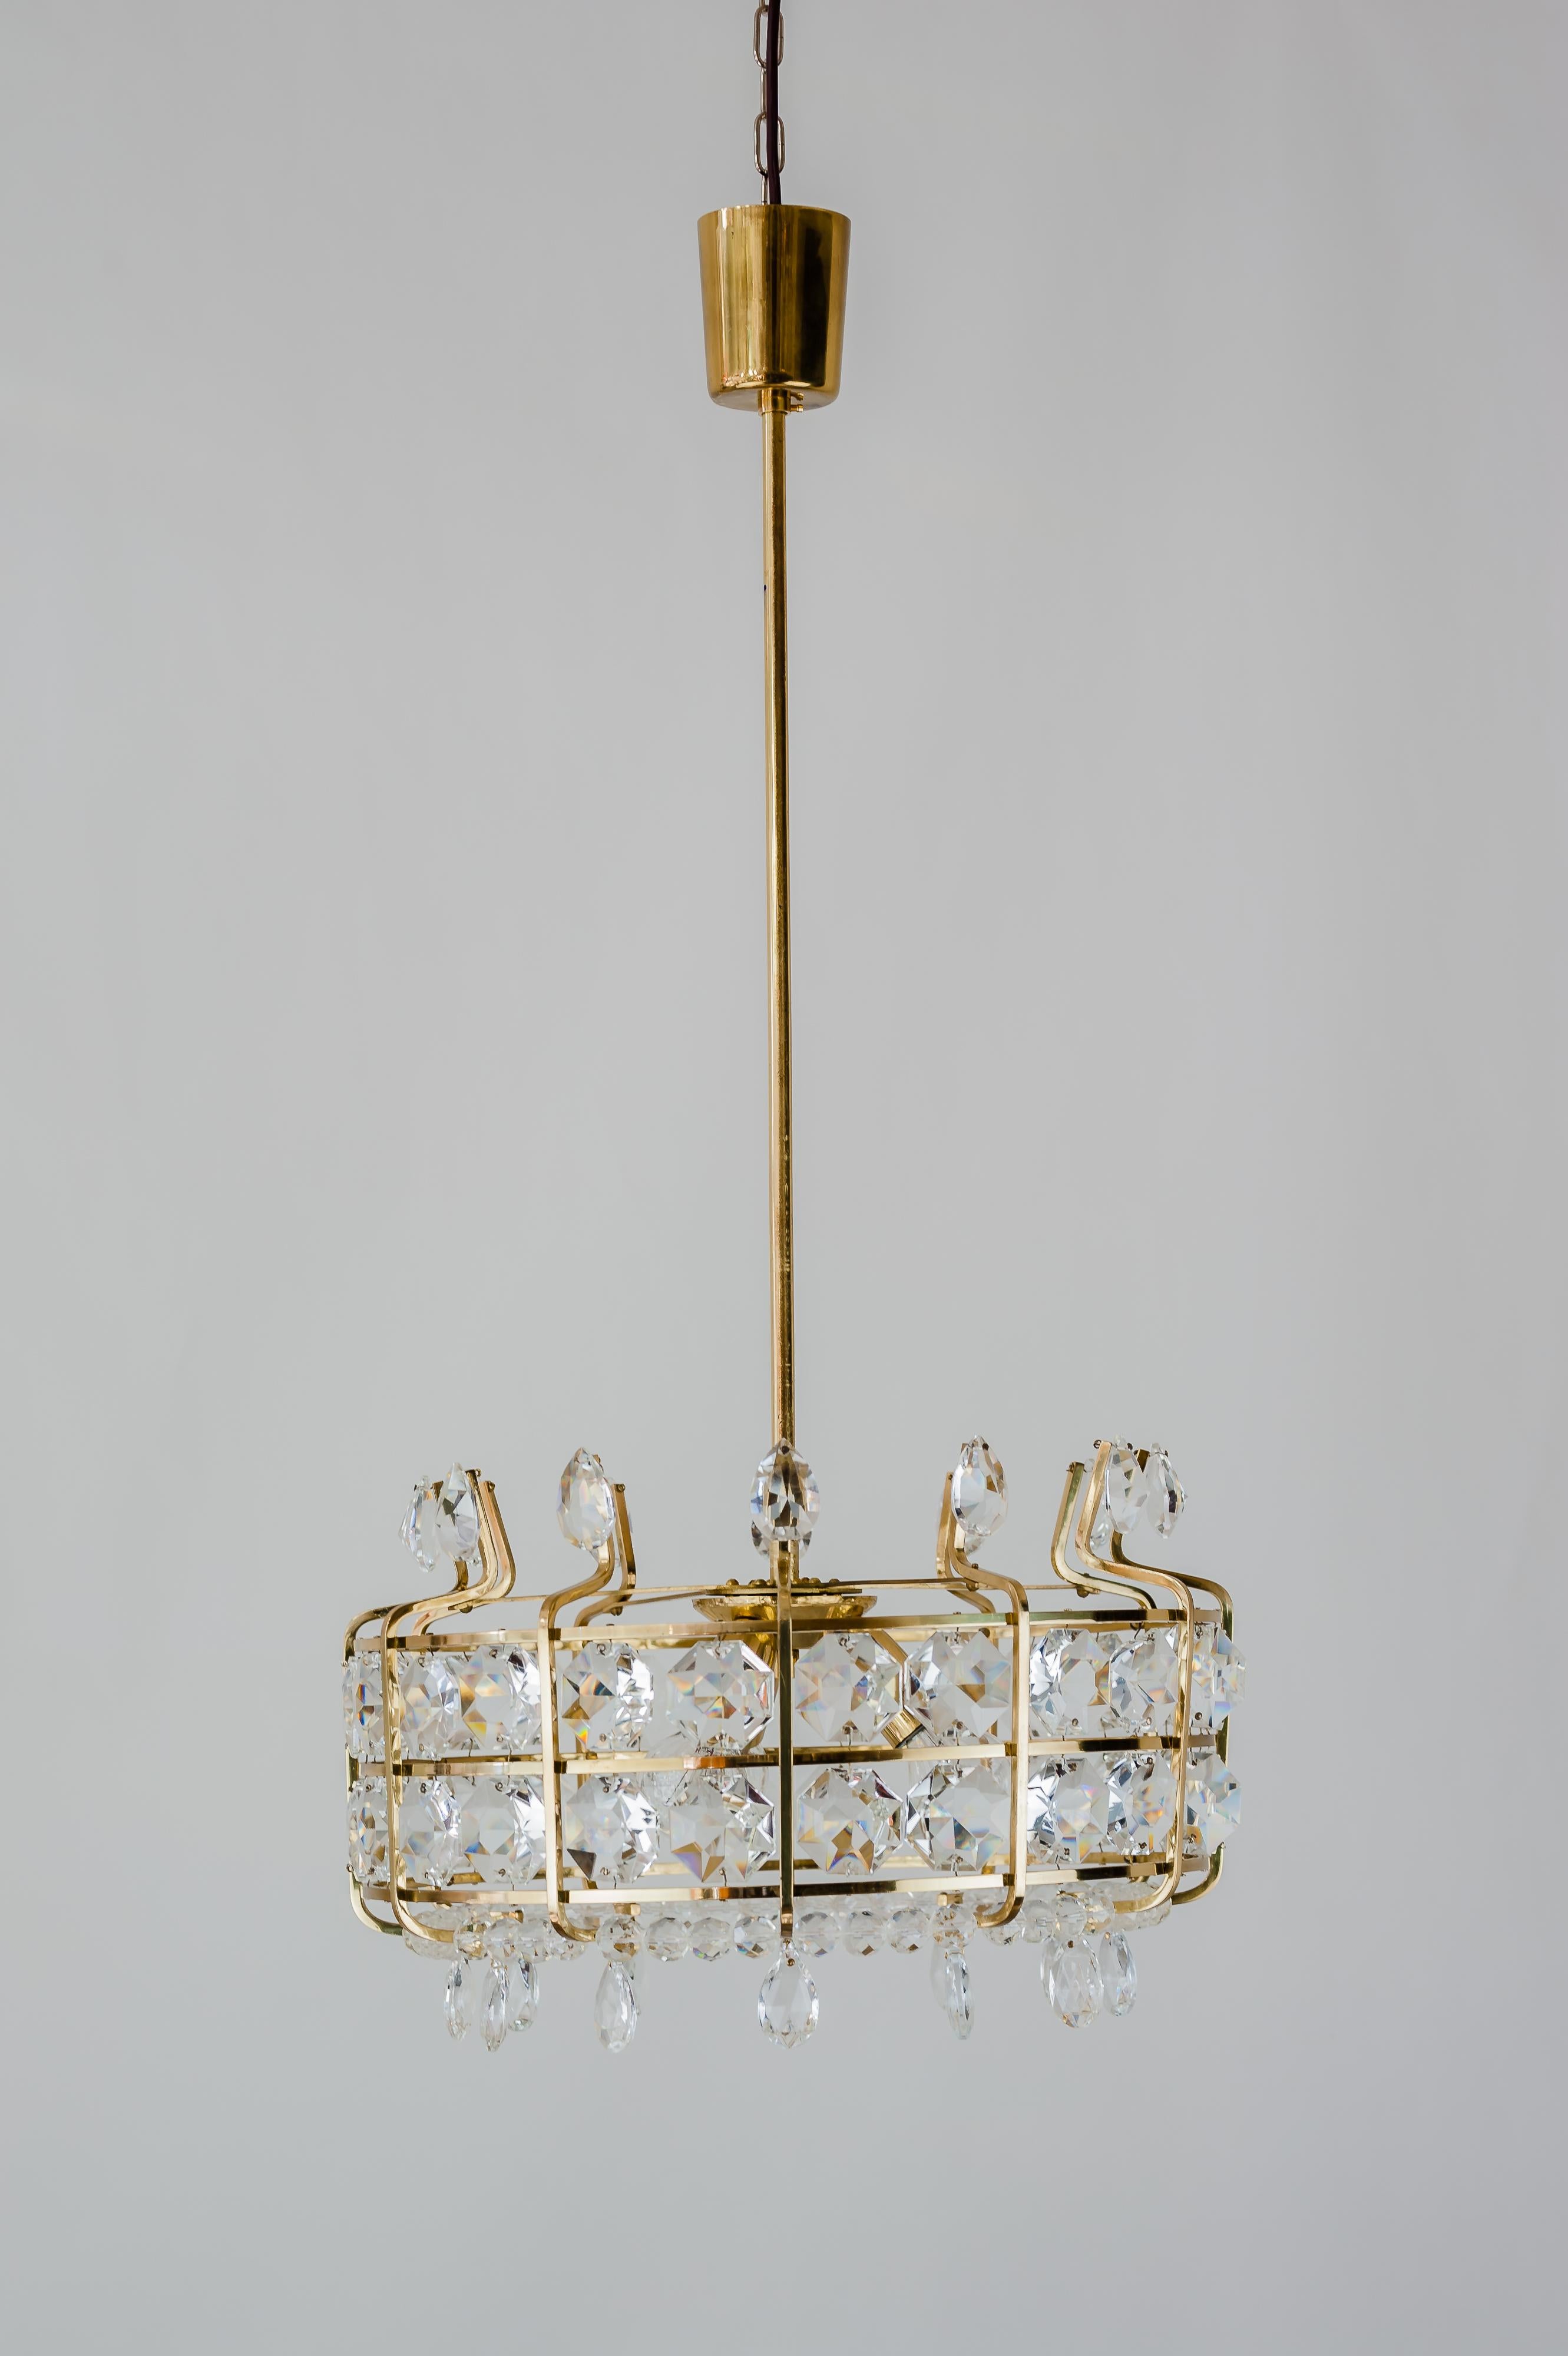 Bakalowits chandelier around 1950s
Original condition